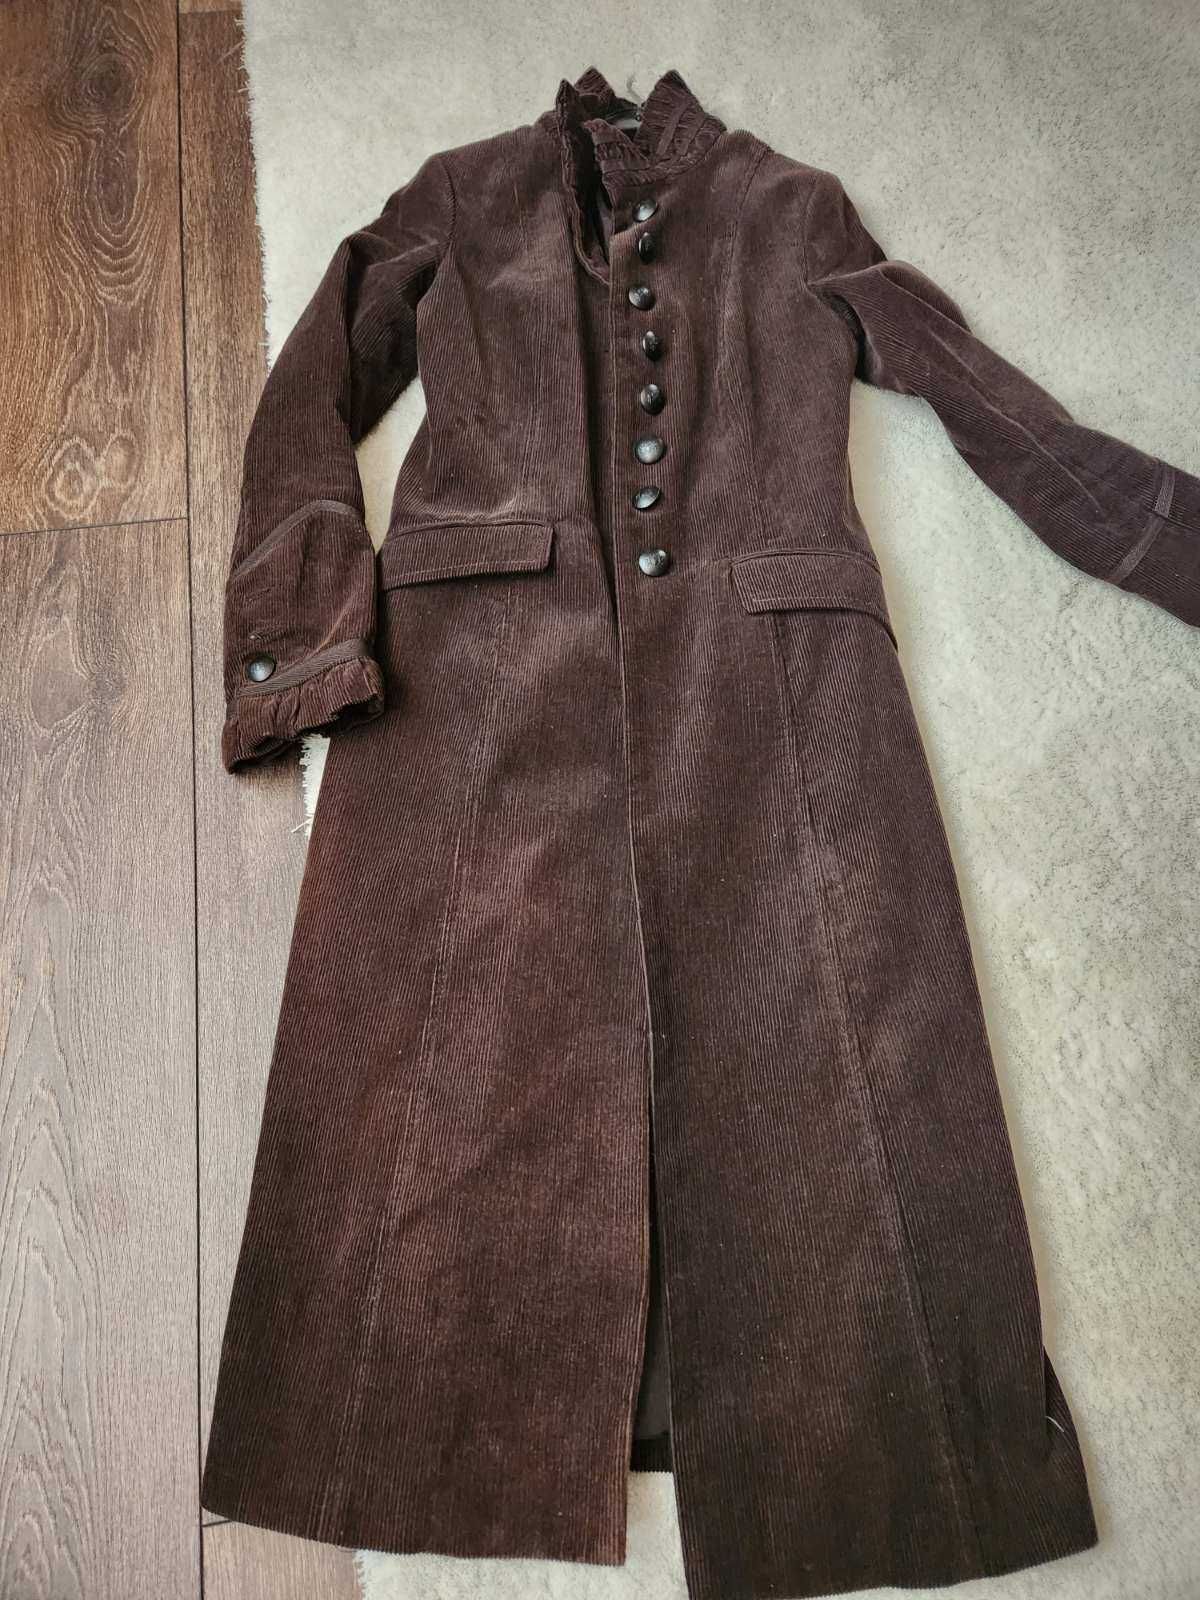 Дамско манто Zara, късо дънково яке, палто Bershka